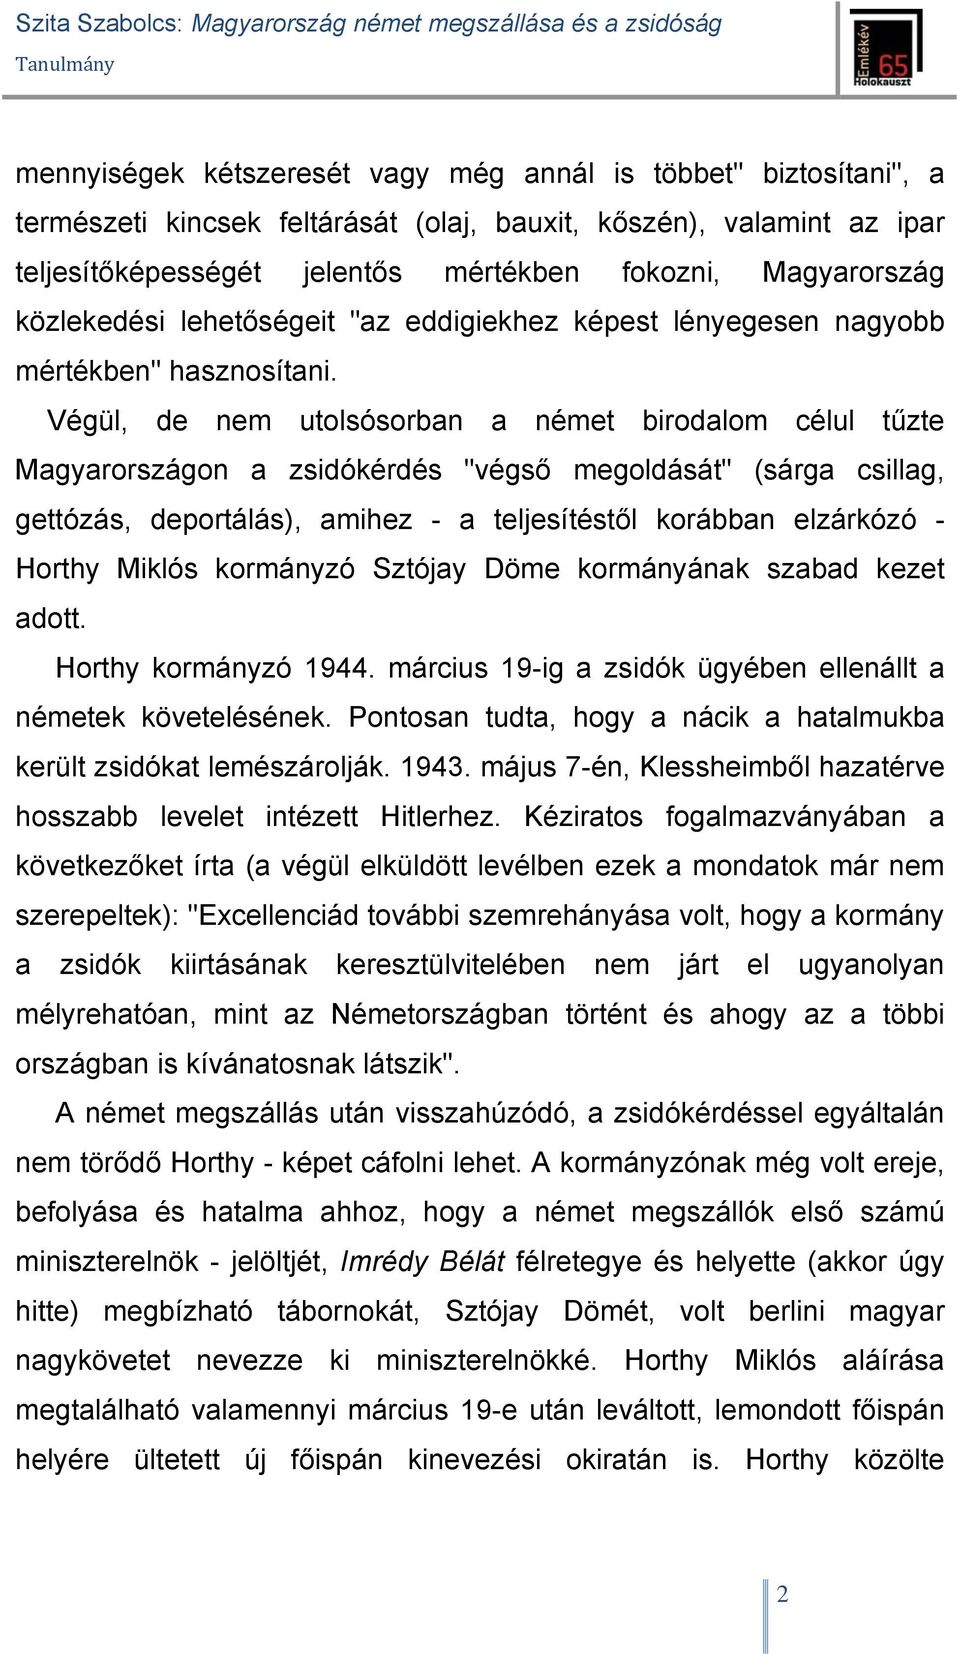 Végül, de nem utolsósorban a német birodalom célul tűzte Magyarországon a zsidókérdés "végső megoldását" (sárga csillag, gettózás, deportálás), amihez - a teljesítéstől korábban elzárkózó - Horthy